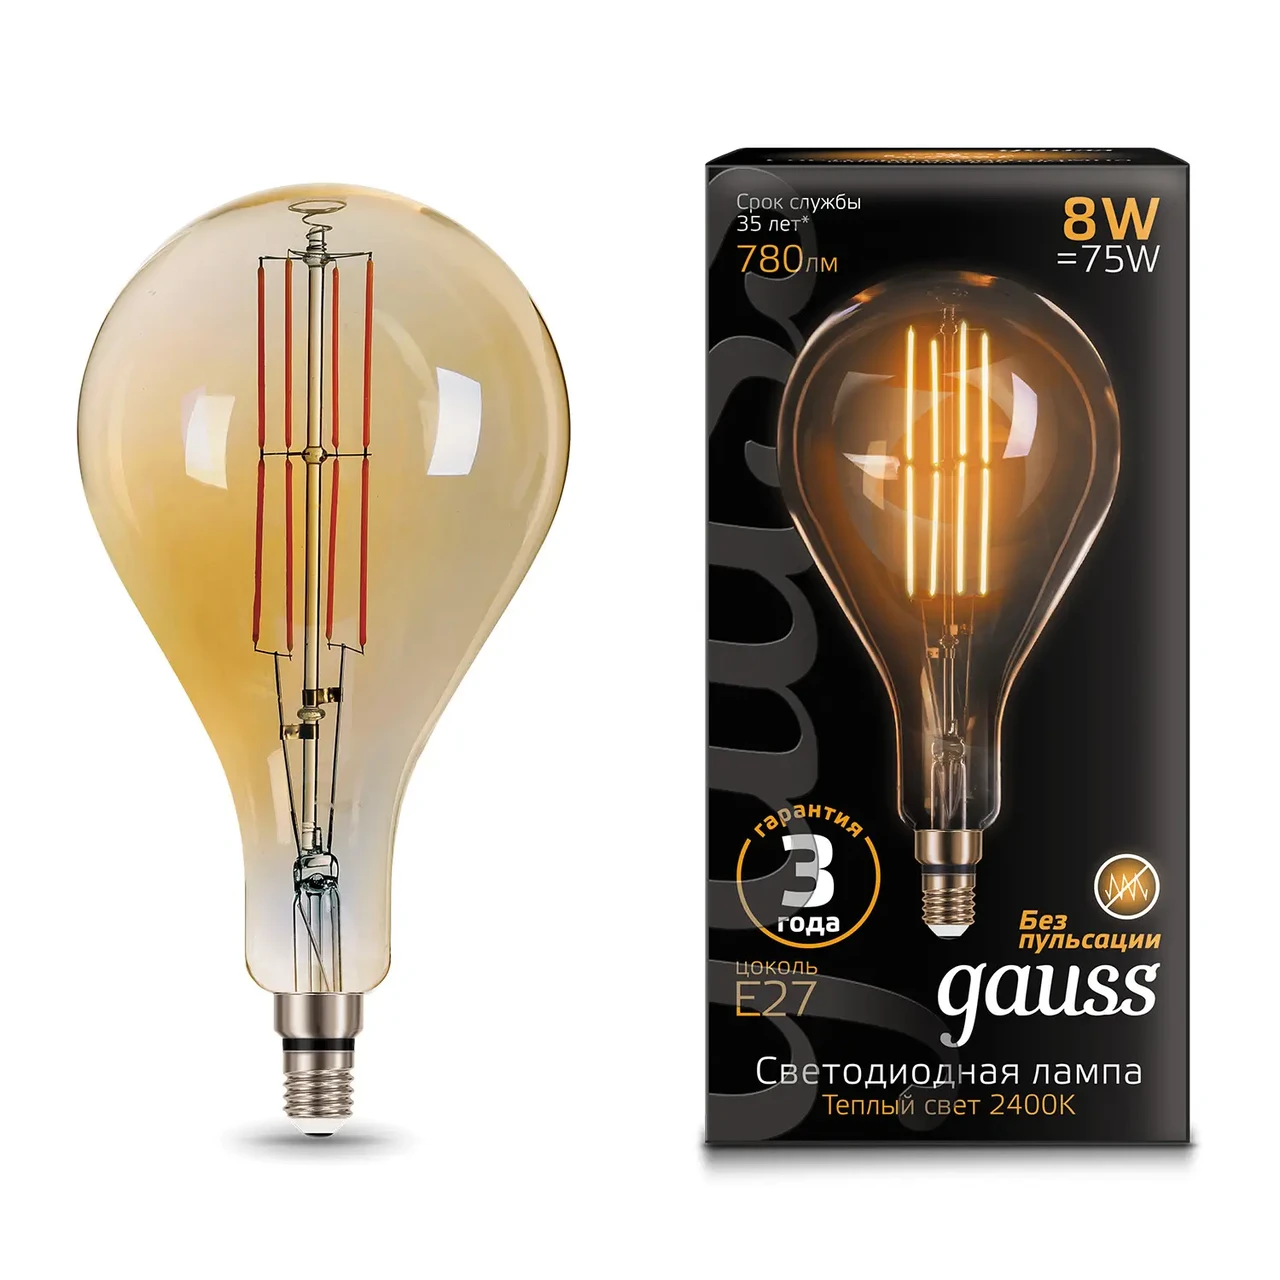 Лампа Gauss Filament А160 8W 780lm 2400К Е27 golden straight LED 1/6, фото 1